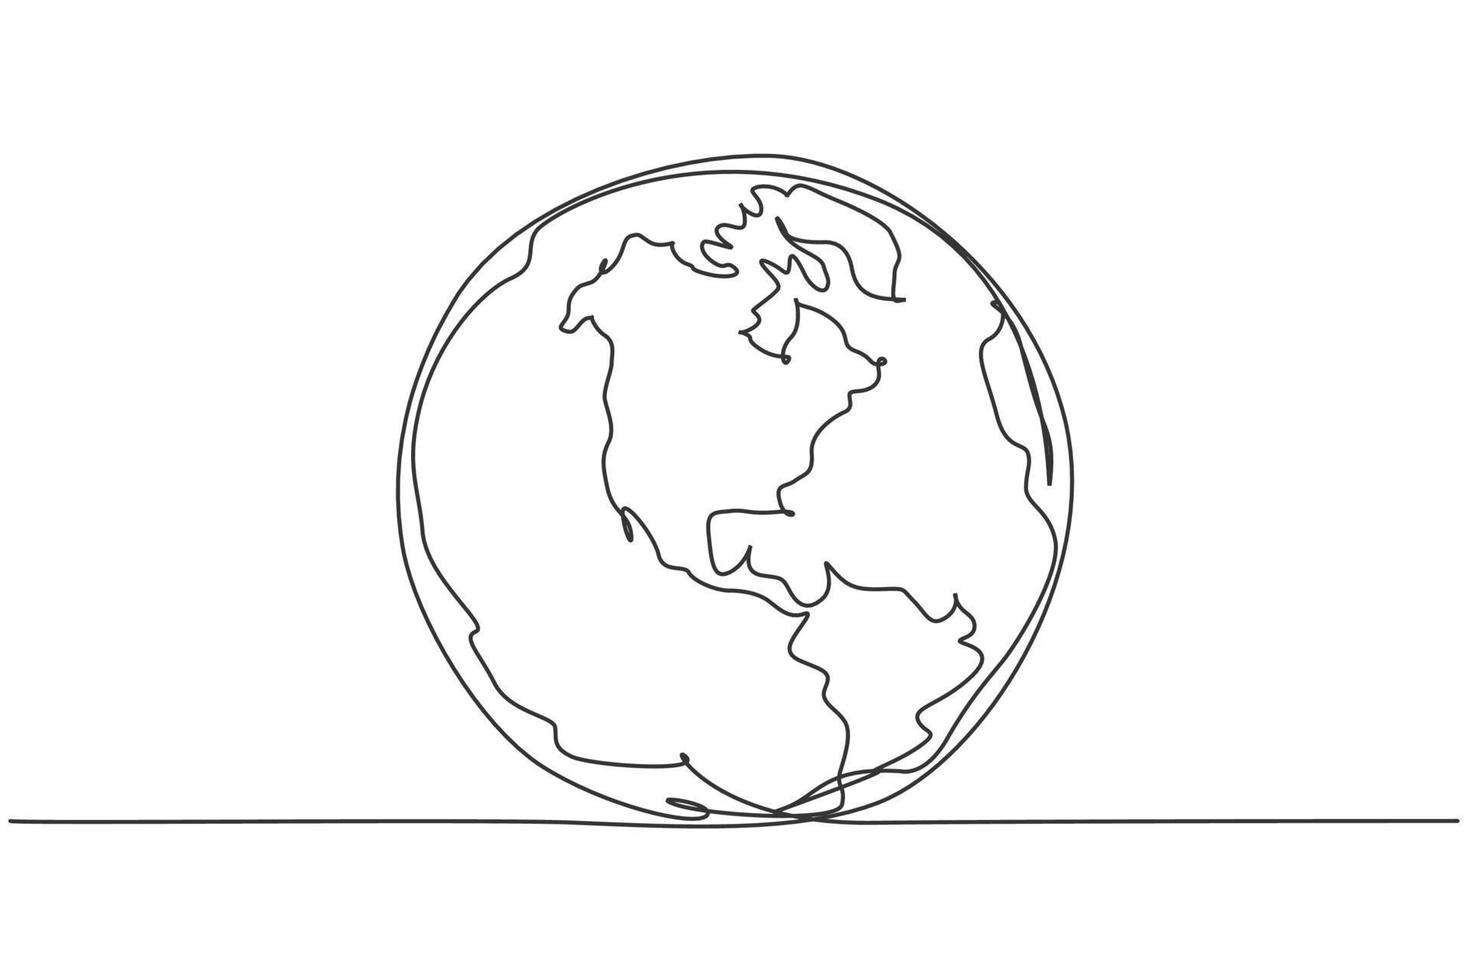 globo terrestre rotondo. disegno a tratteggio continuo della mappa del mondo design minimalista dell'illustrazione vettoriale su sfondo bianco. linea semplice disegna uno stile grafico moderno. concetto grafico disegnato a mano per l'istruzione